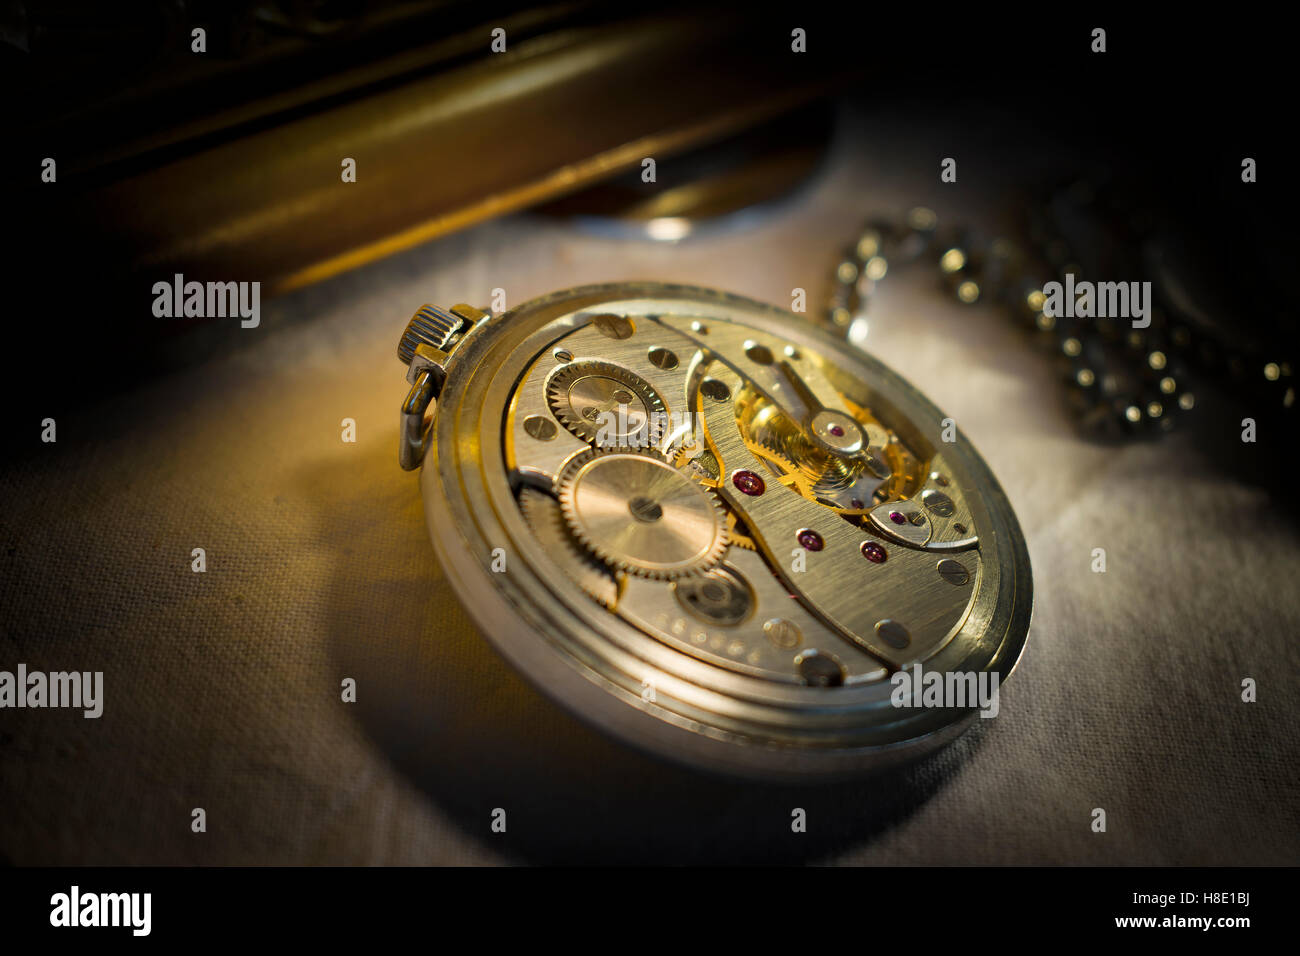 Clockwork Mechanism of Old Pocket Watch Stock Photo